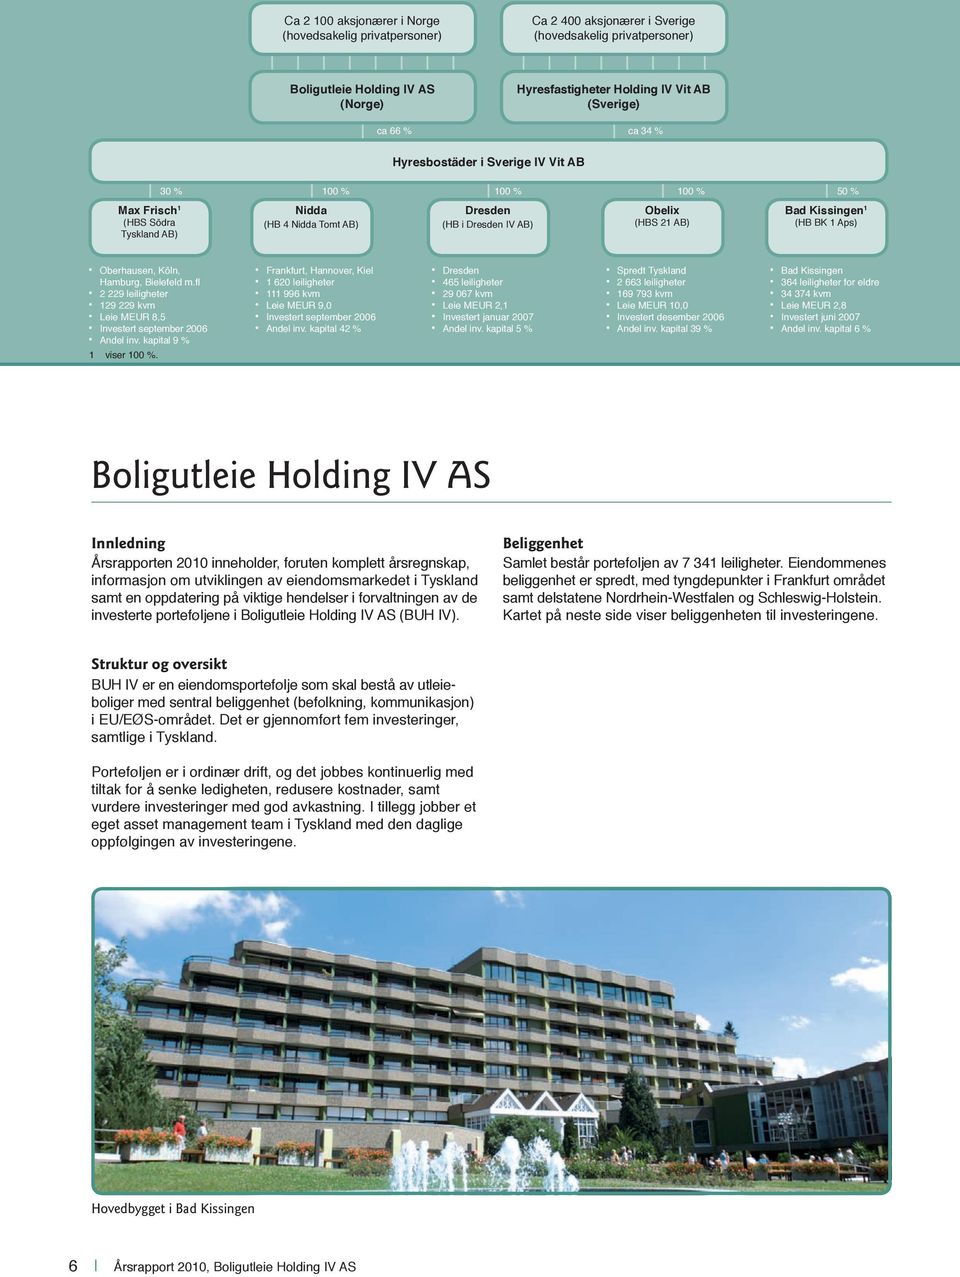 Kissingen 1 (HB BK 1 Aps) Oberhausen, Köln, Hamburg, Bielefeld m.fl 2 229 leiligheter 129 229 kvm Leie MEUR 8,5 Investert september 2006 Andel inv. kapital 9 % 1 viser 100 %.